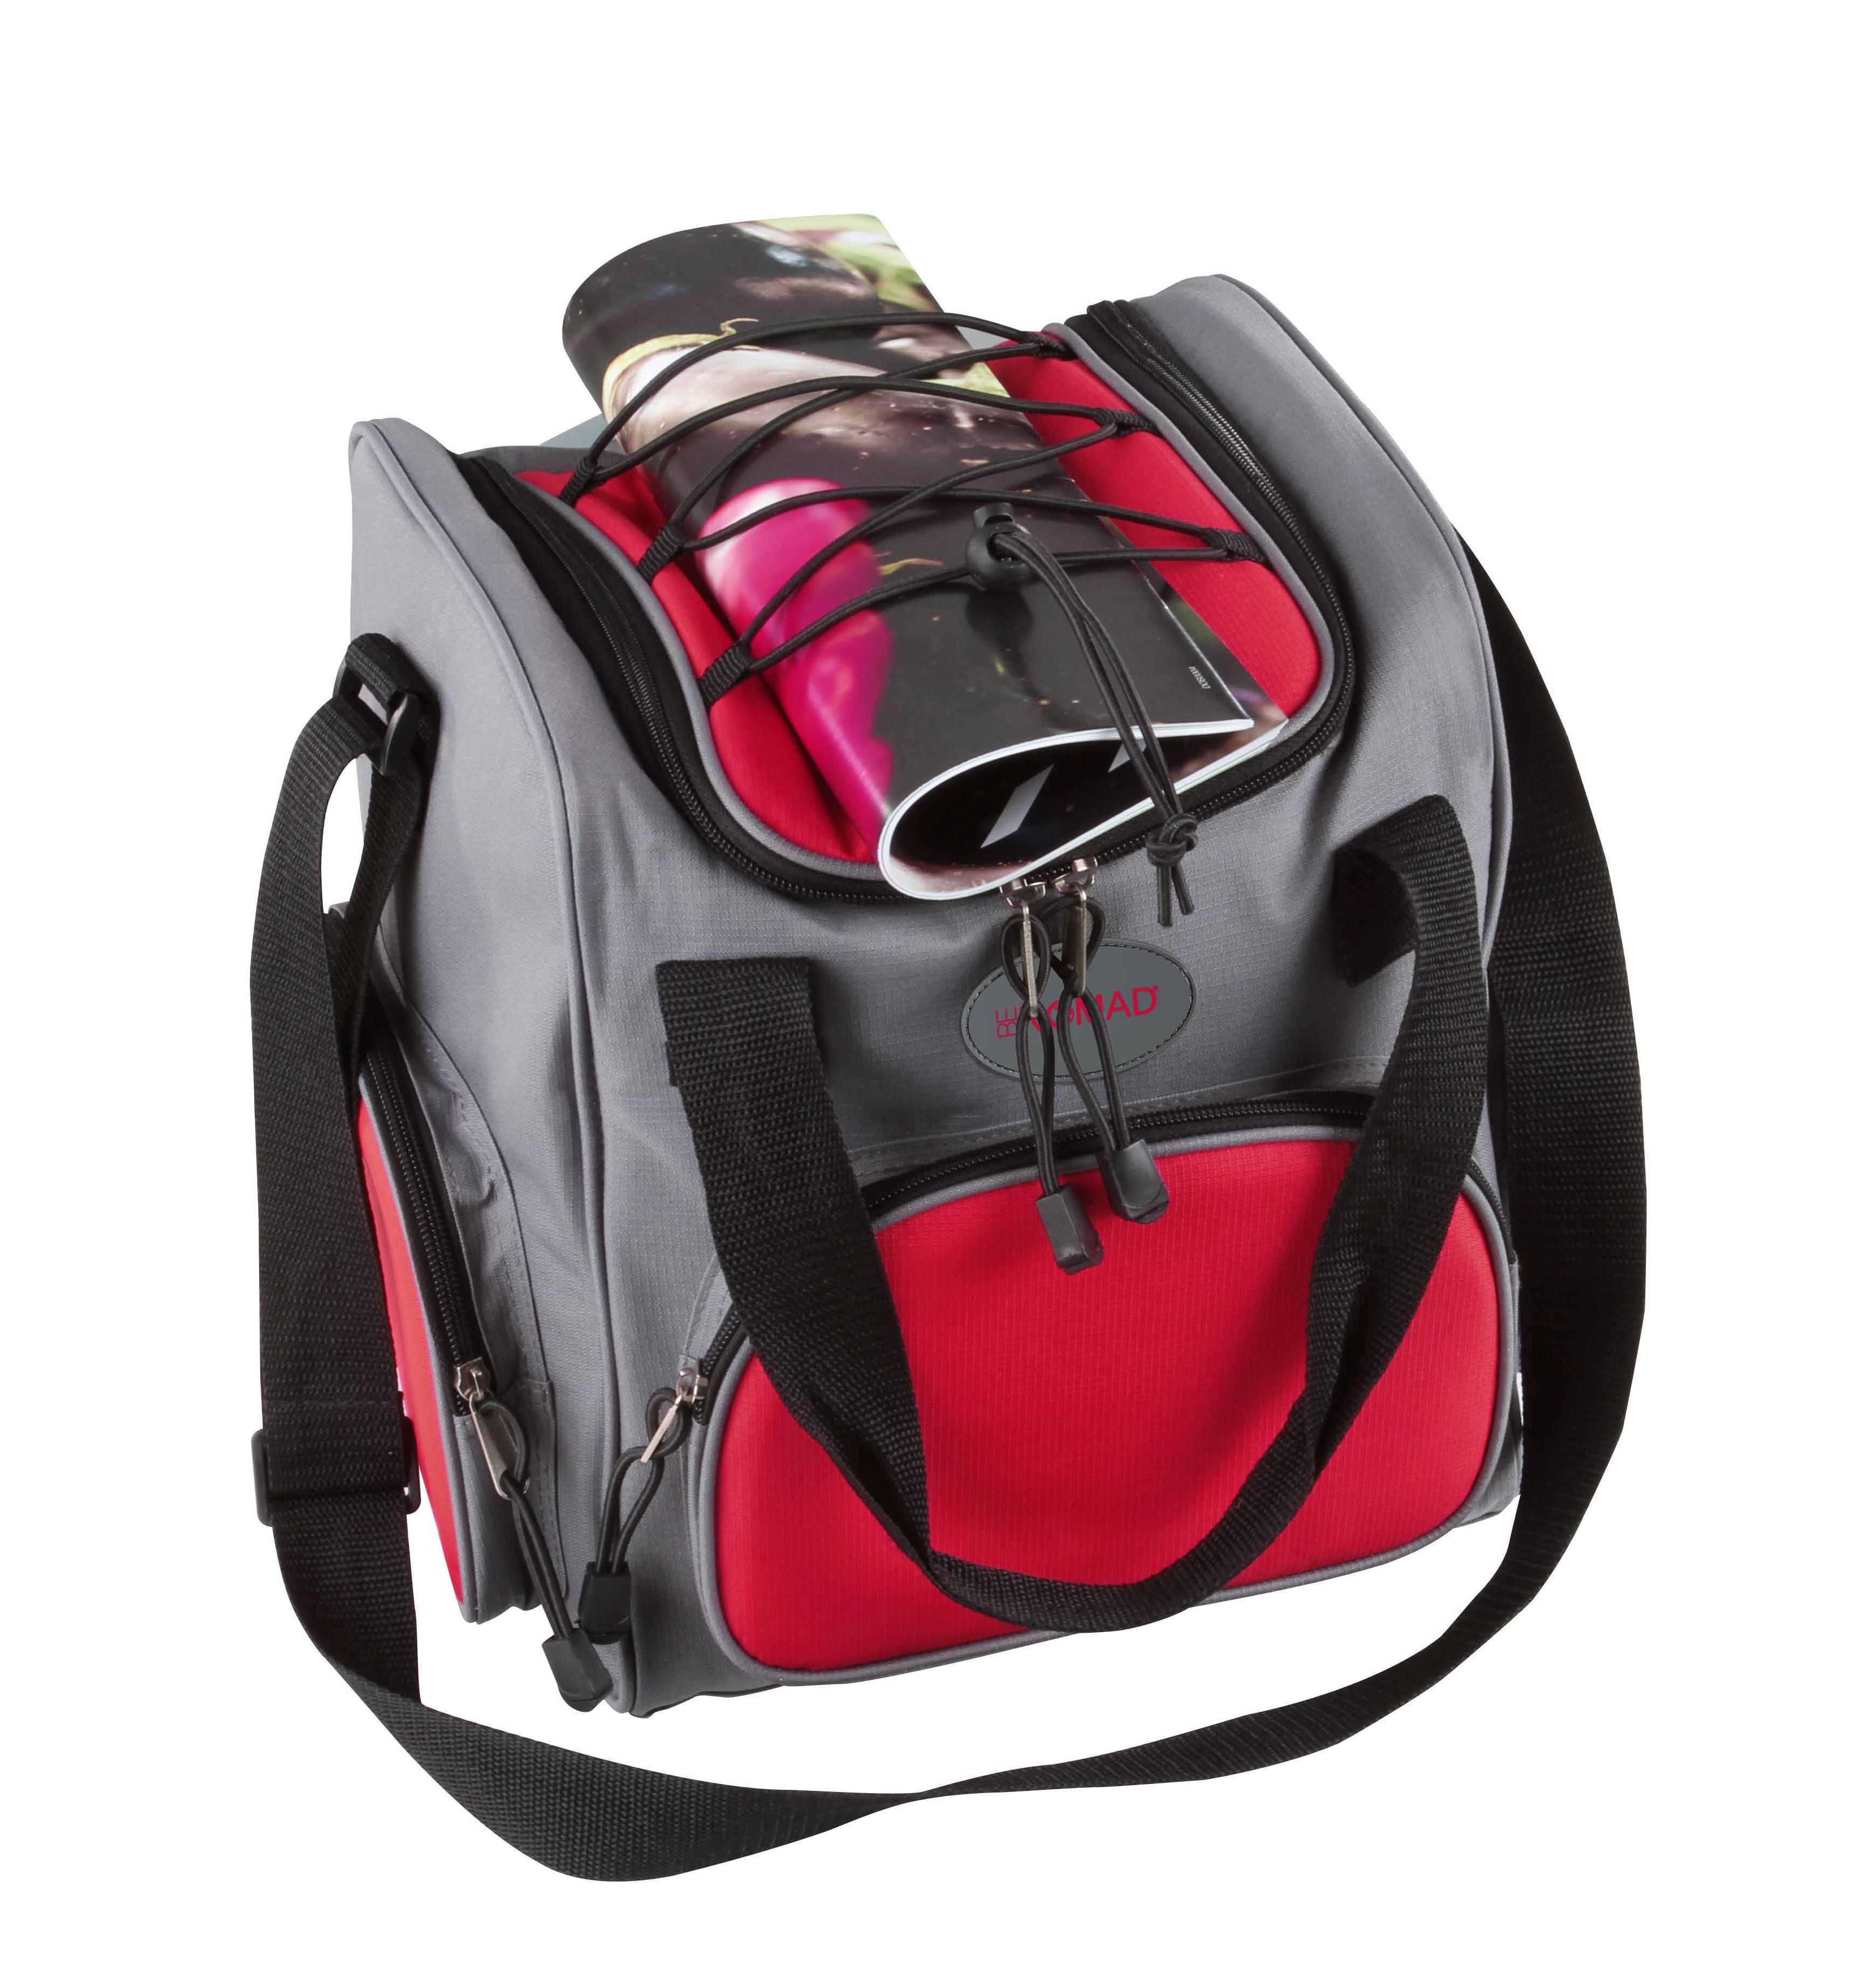 Chladící taška BeNomad FR8R, šedočervená